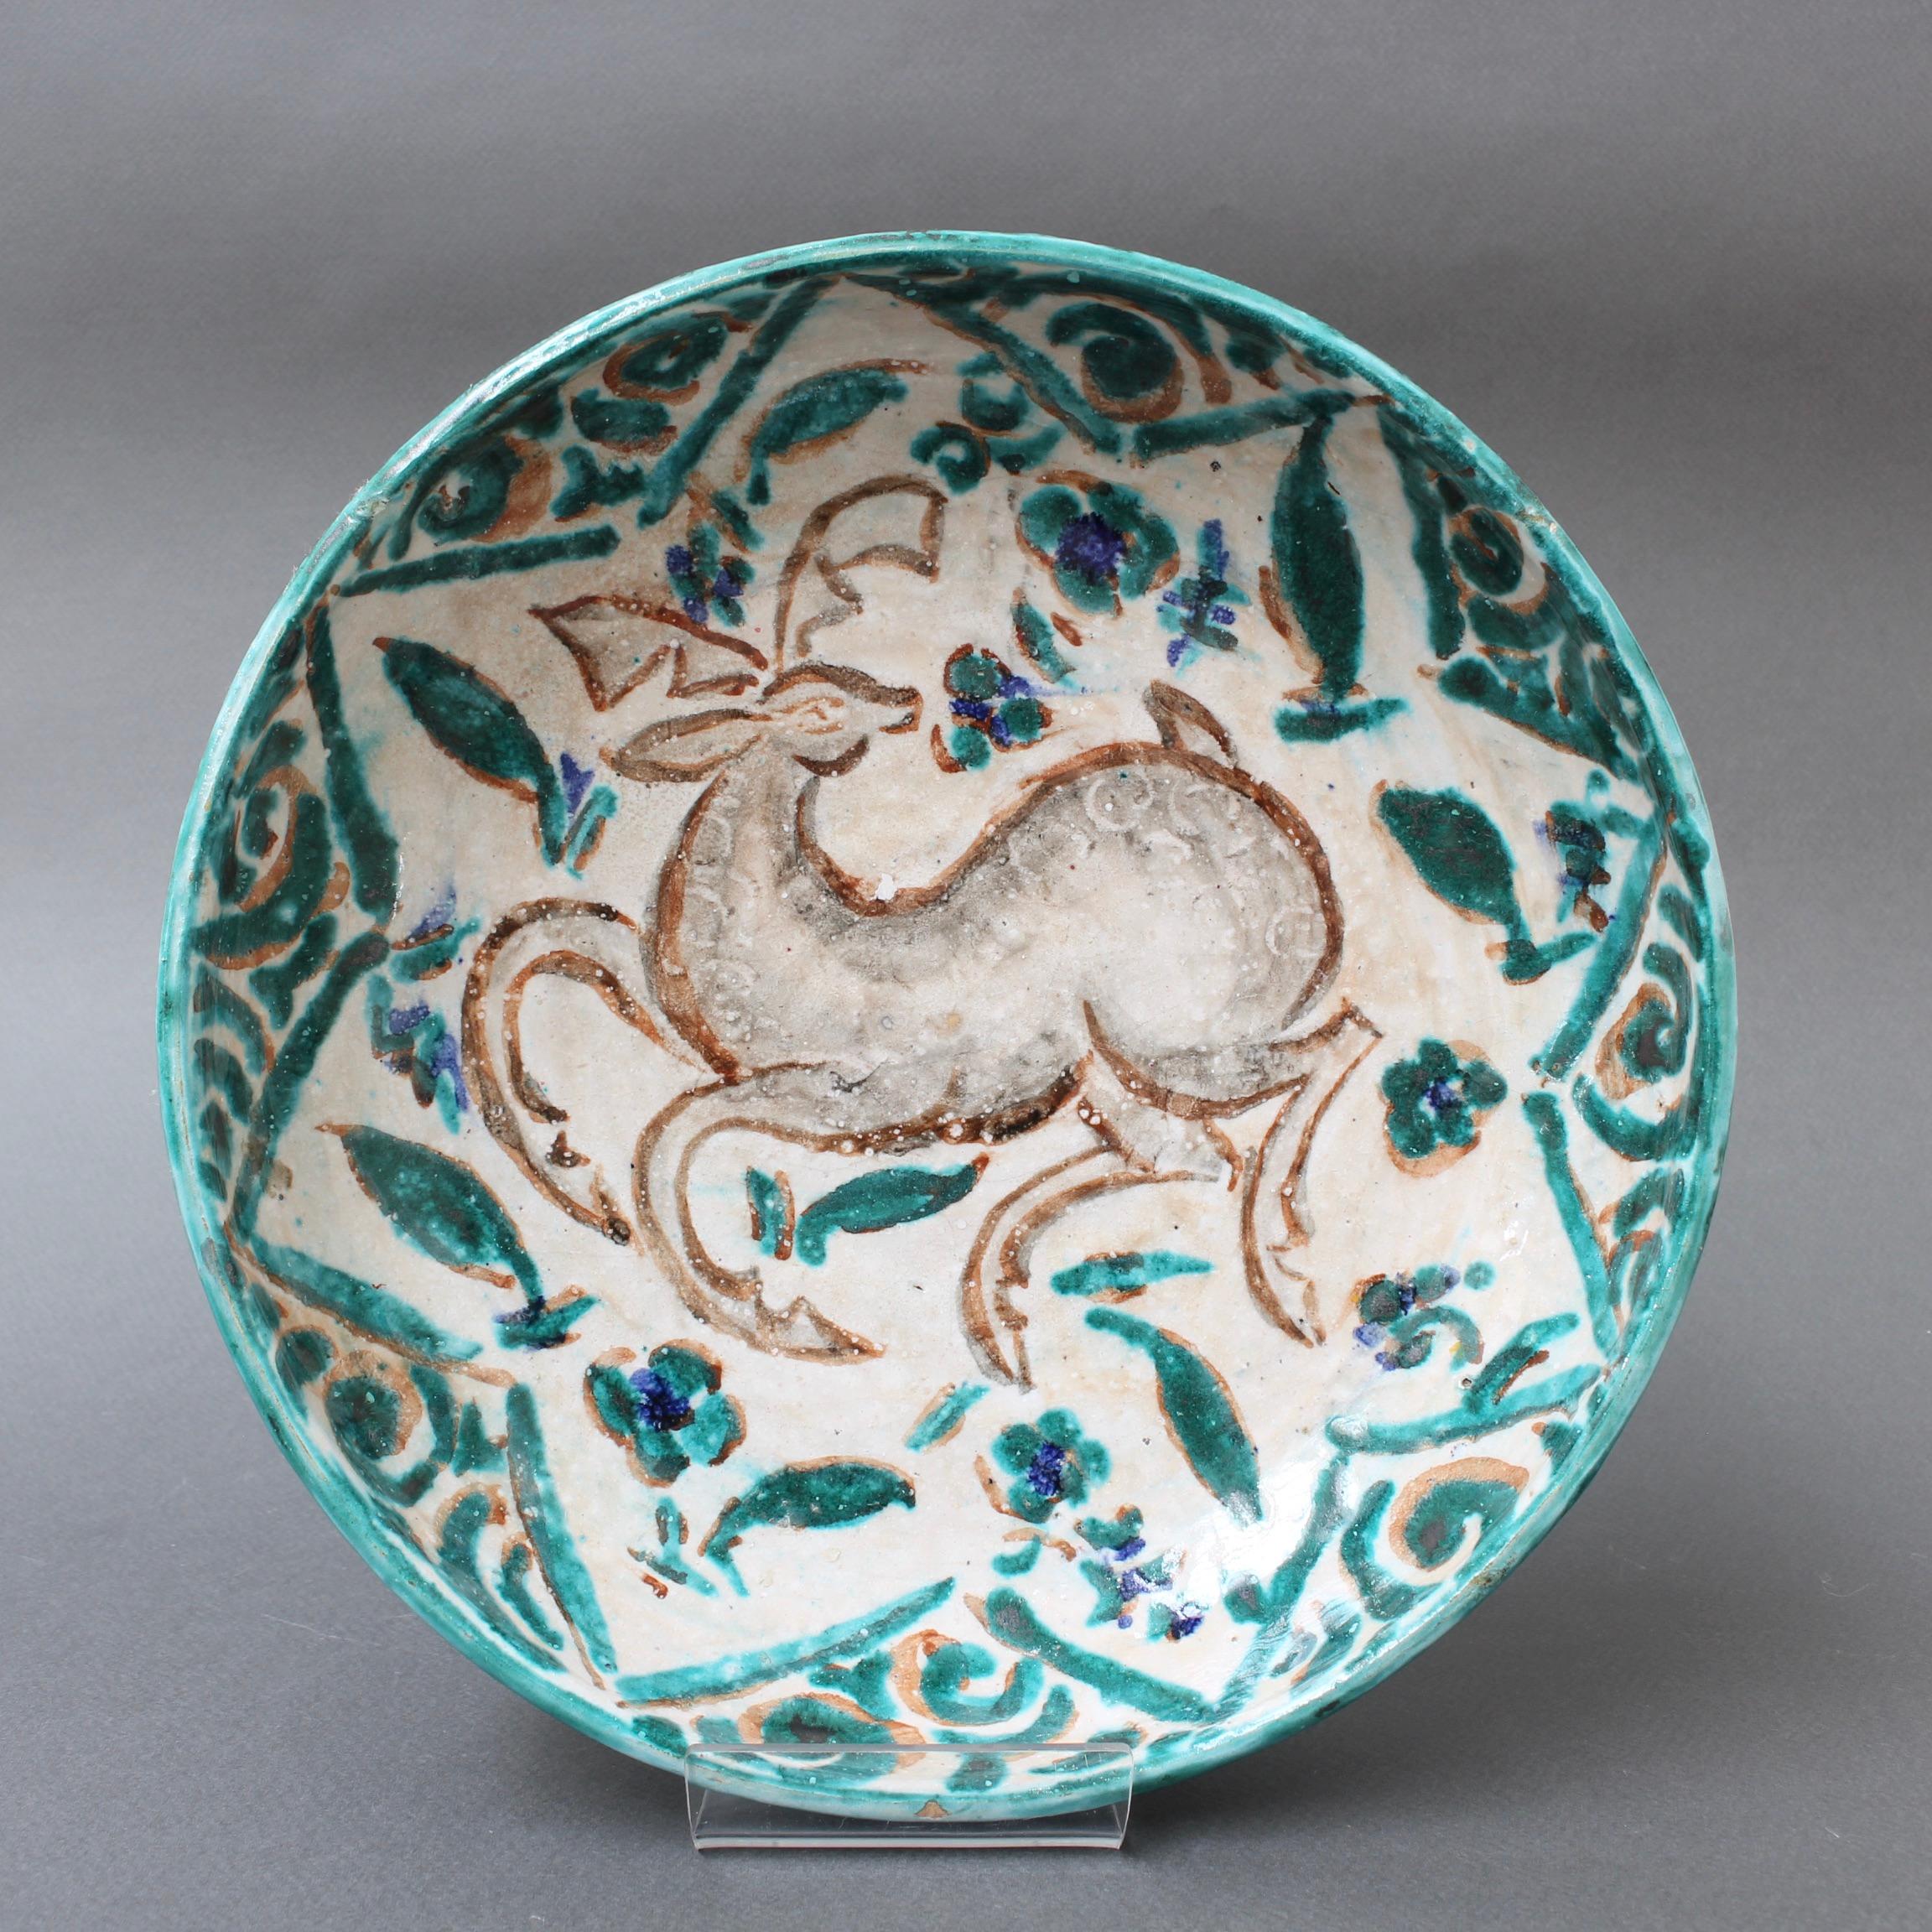 Französische, persisch inspirierte Keramikschale von Édouard Cazaux (um 1930). Der Meisterkeramiker Édouard Cazaux ließ sich bei seinen Kreationen von der Antike, der Religion und der Tierwelt inspirieren. Diese prächtig verzierte Keramikschale